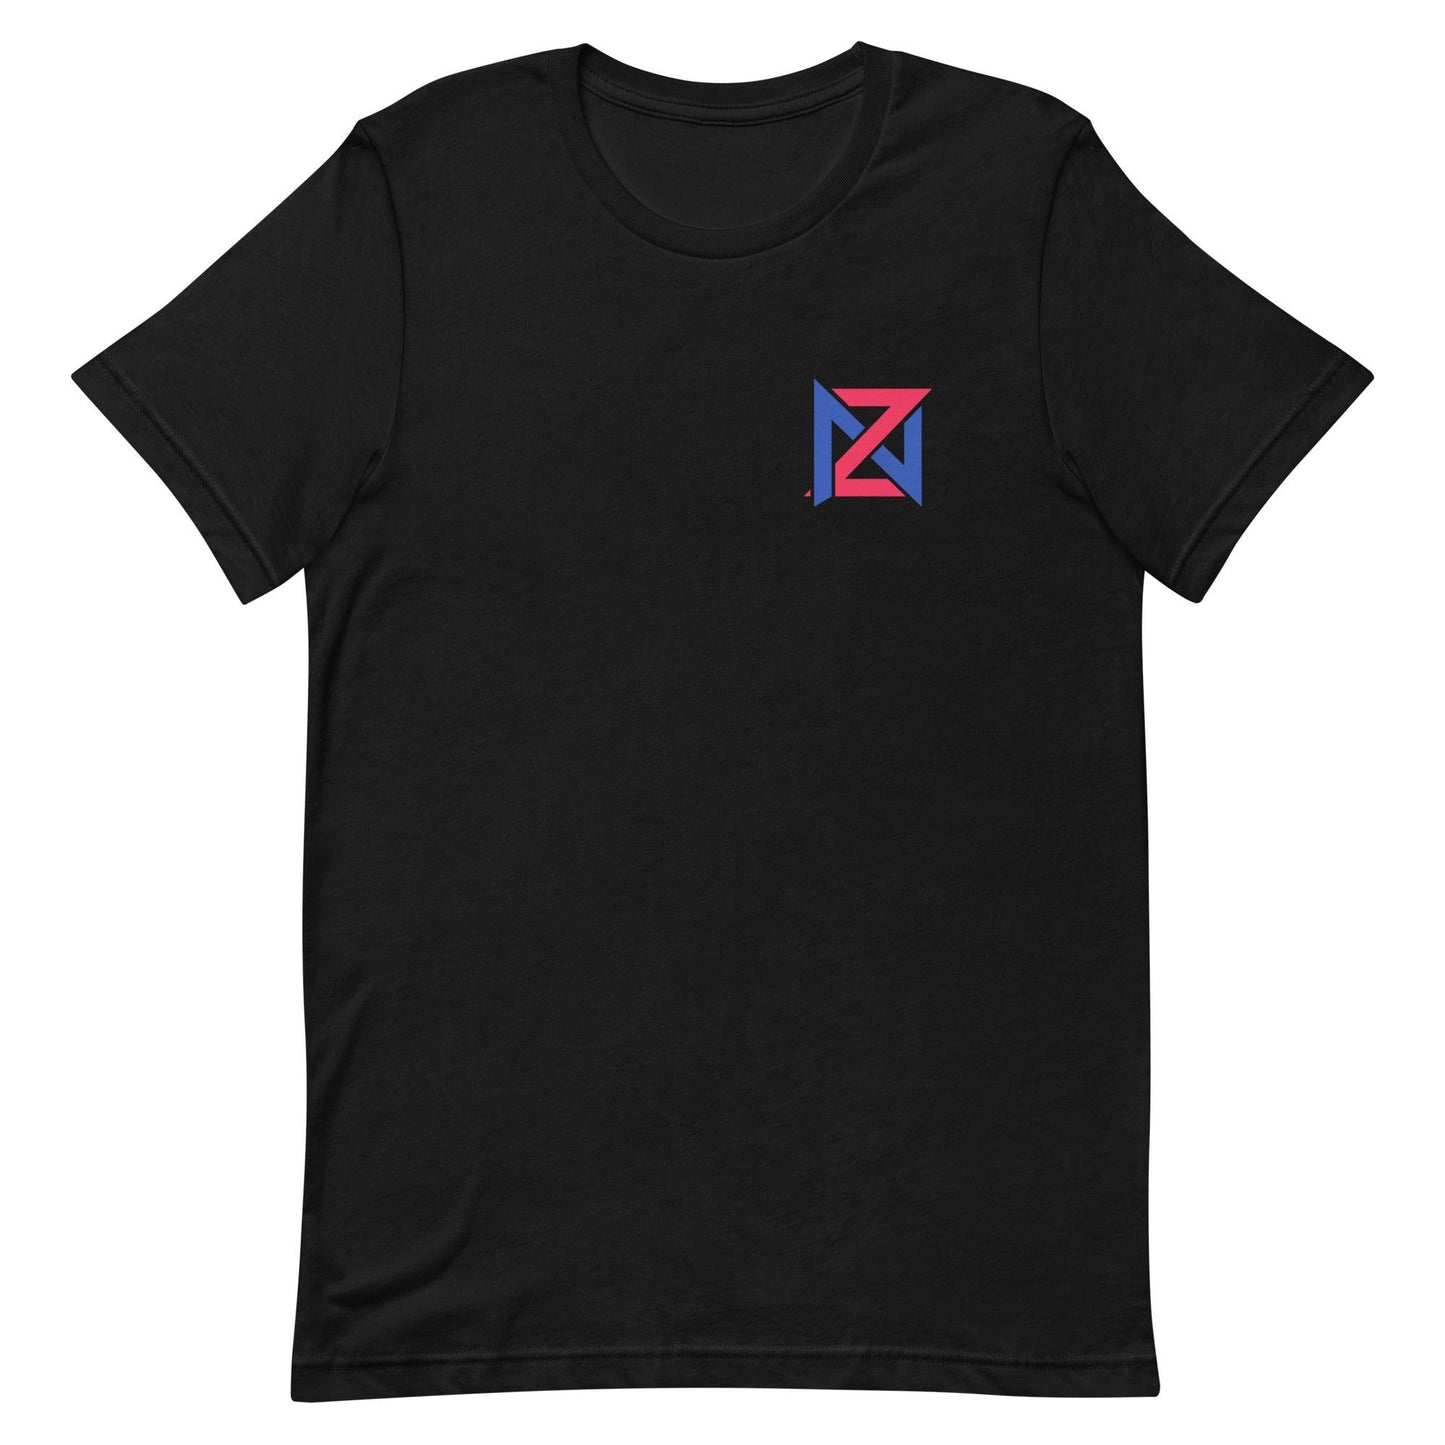 Zach Nutall "Essential" t-shirt - Fan Arch